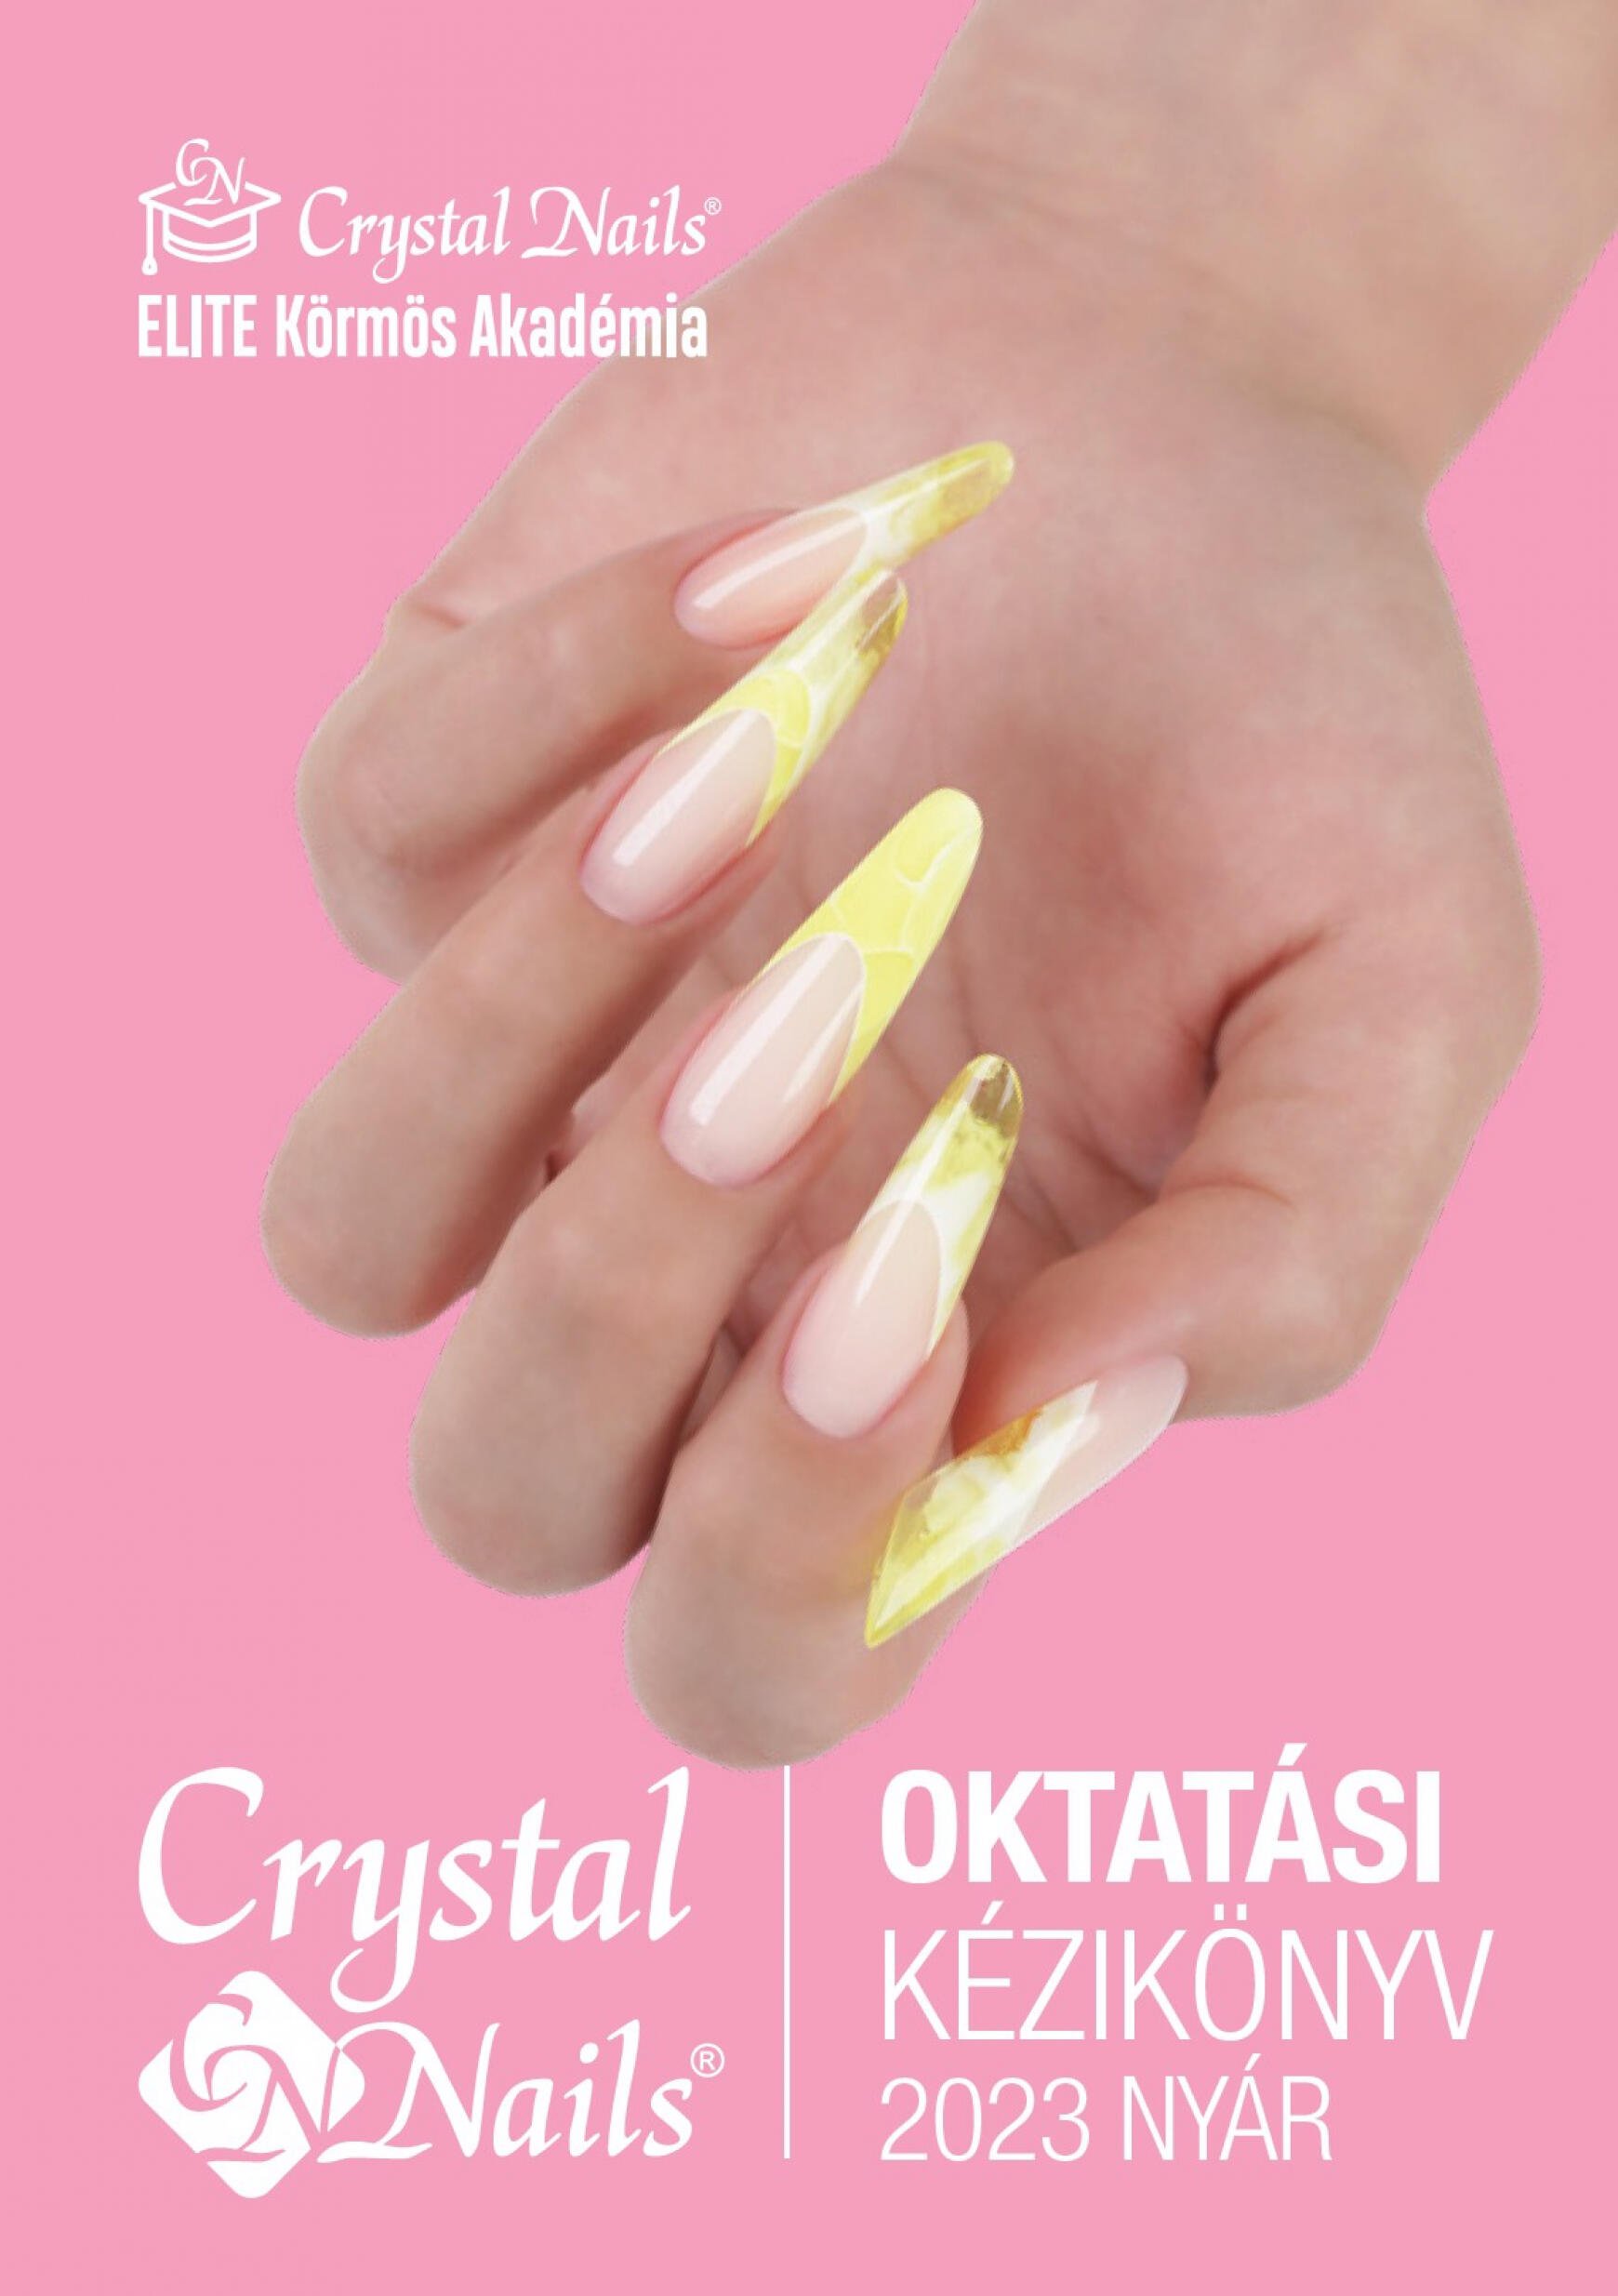 crystal-nails - Crystal Nails Oktatási kézikönyv 2023 nyár - page: 1